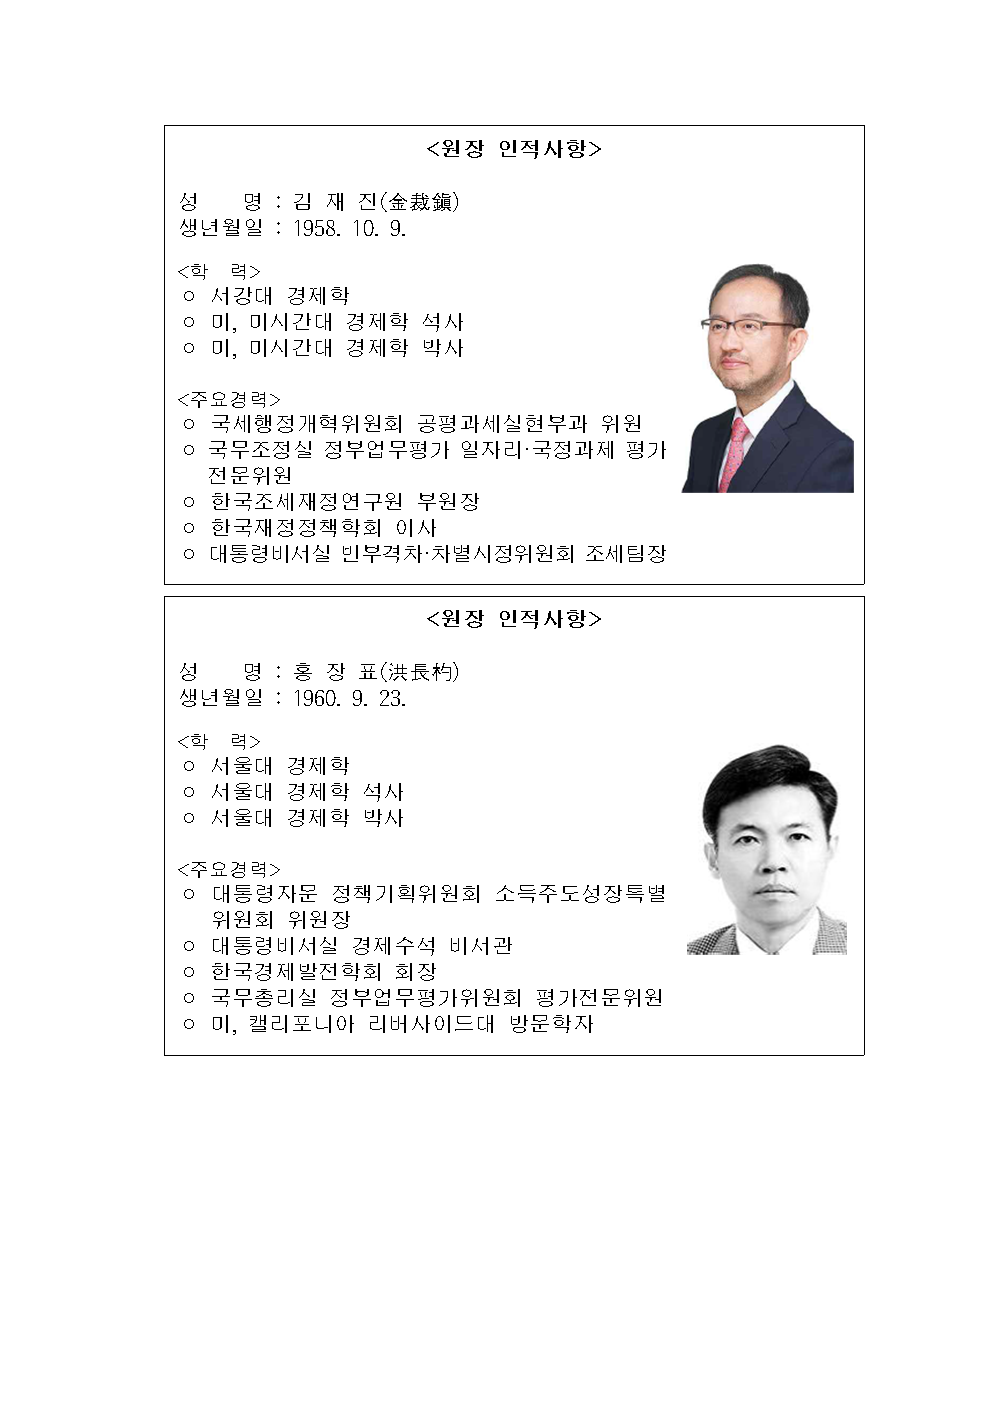 첨부파일참고 : 보도자료(조세 원장, KDI 원장_선임) - 최종.hwp